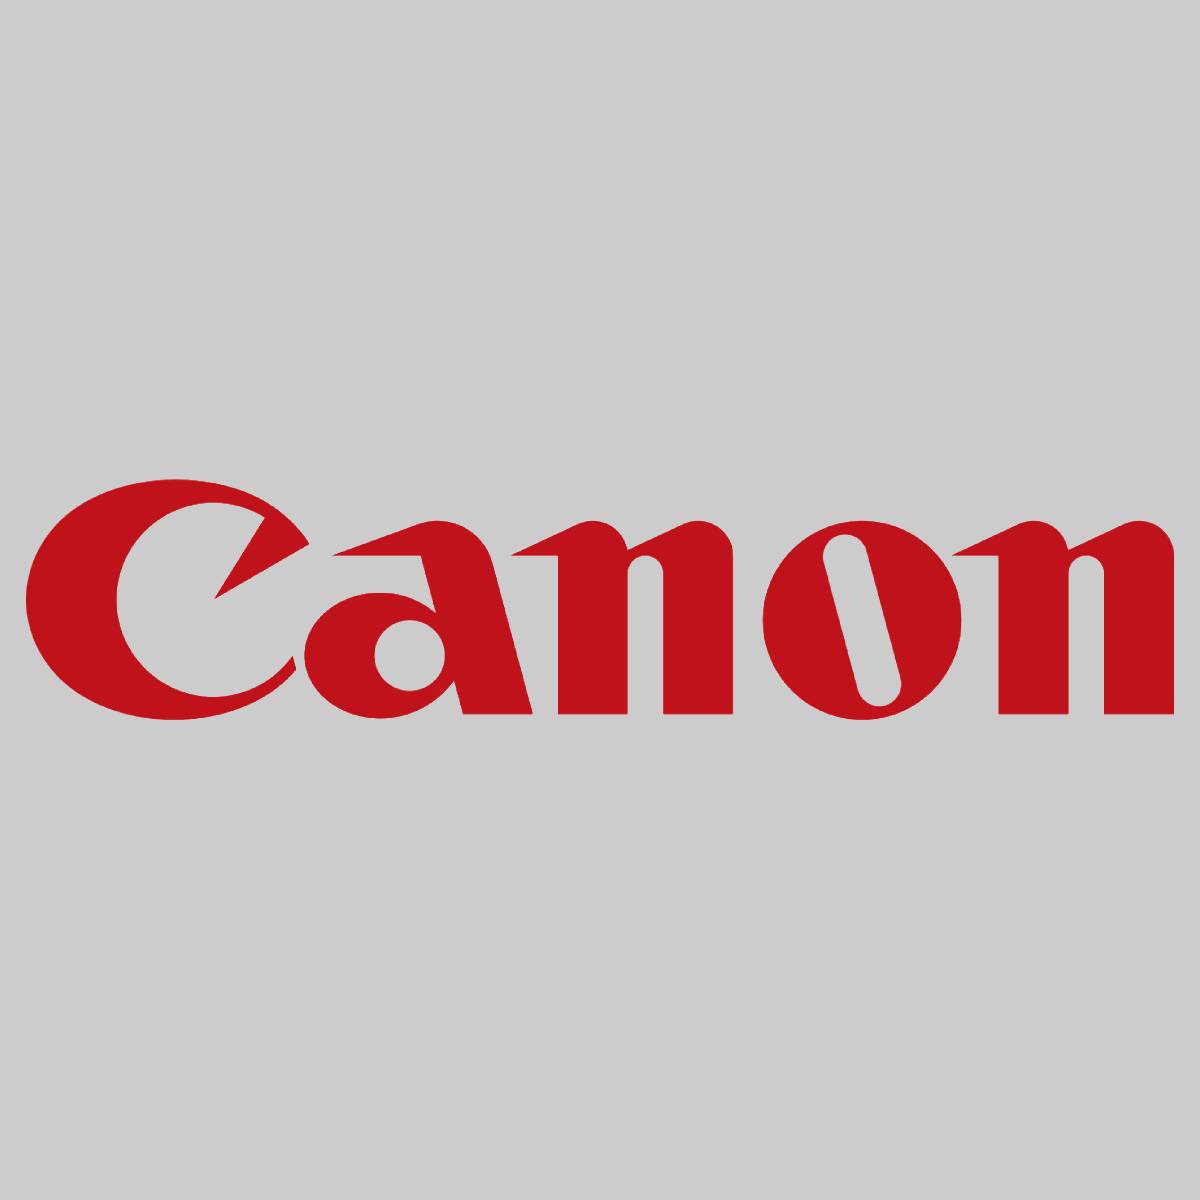 "Original Canon Pressure Pad FL2-2649-000 für imagePRESS C6010 C7000 C7010 NEU^